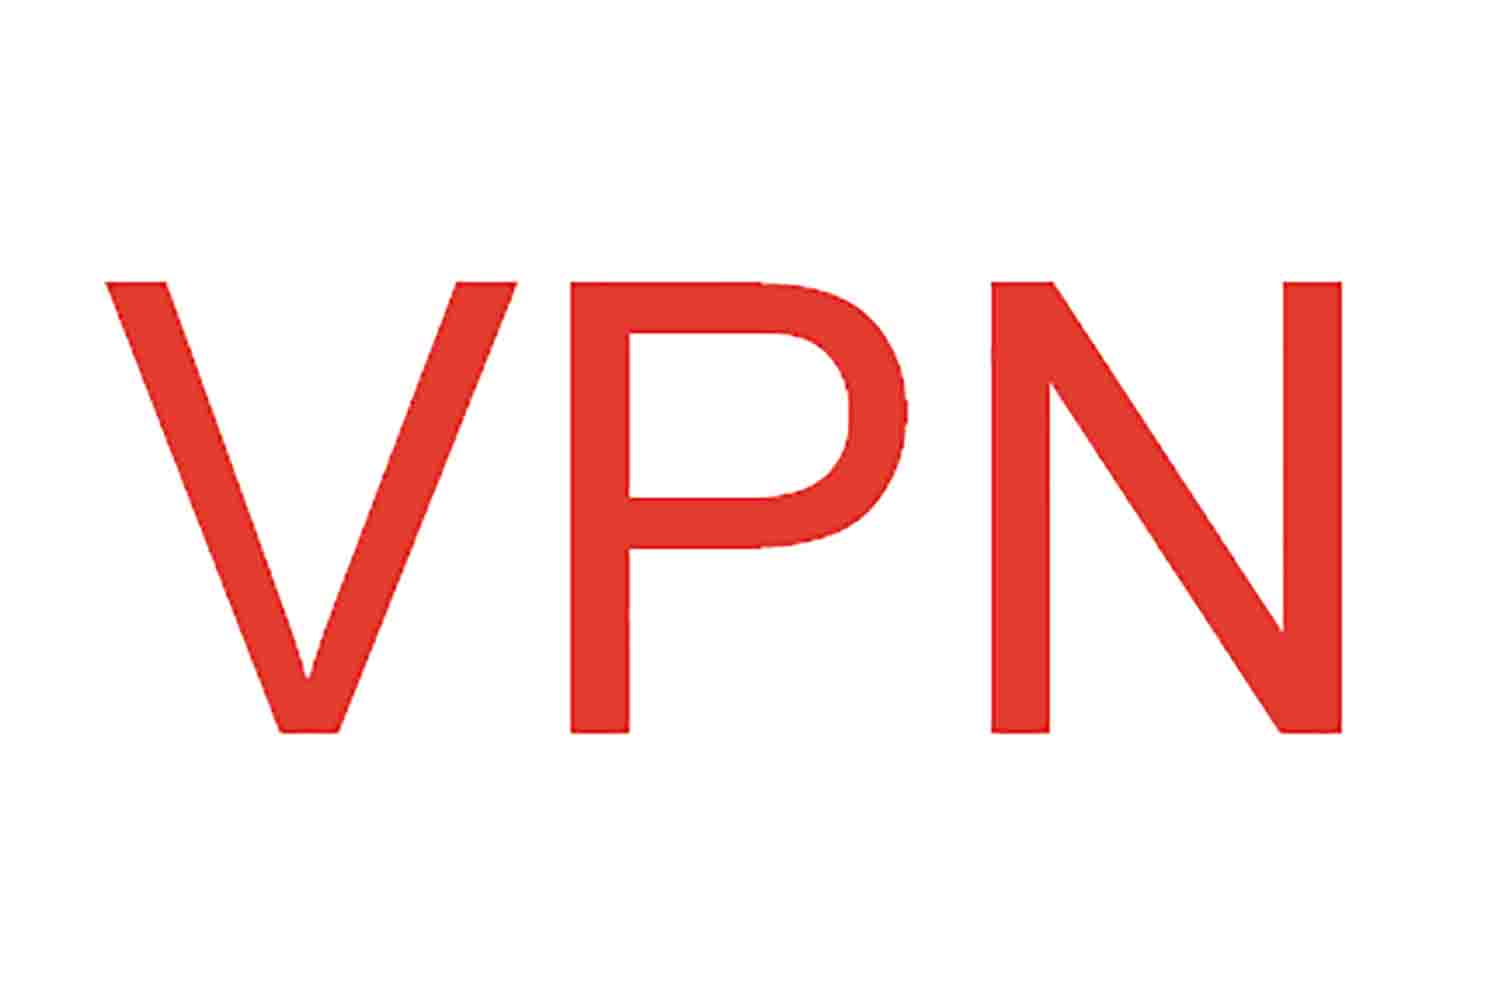 Что такое VPN